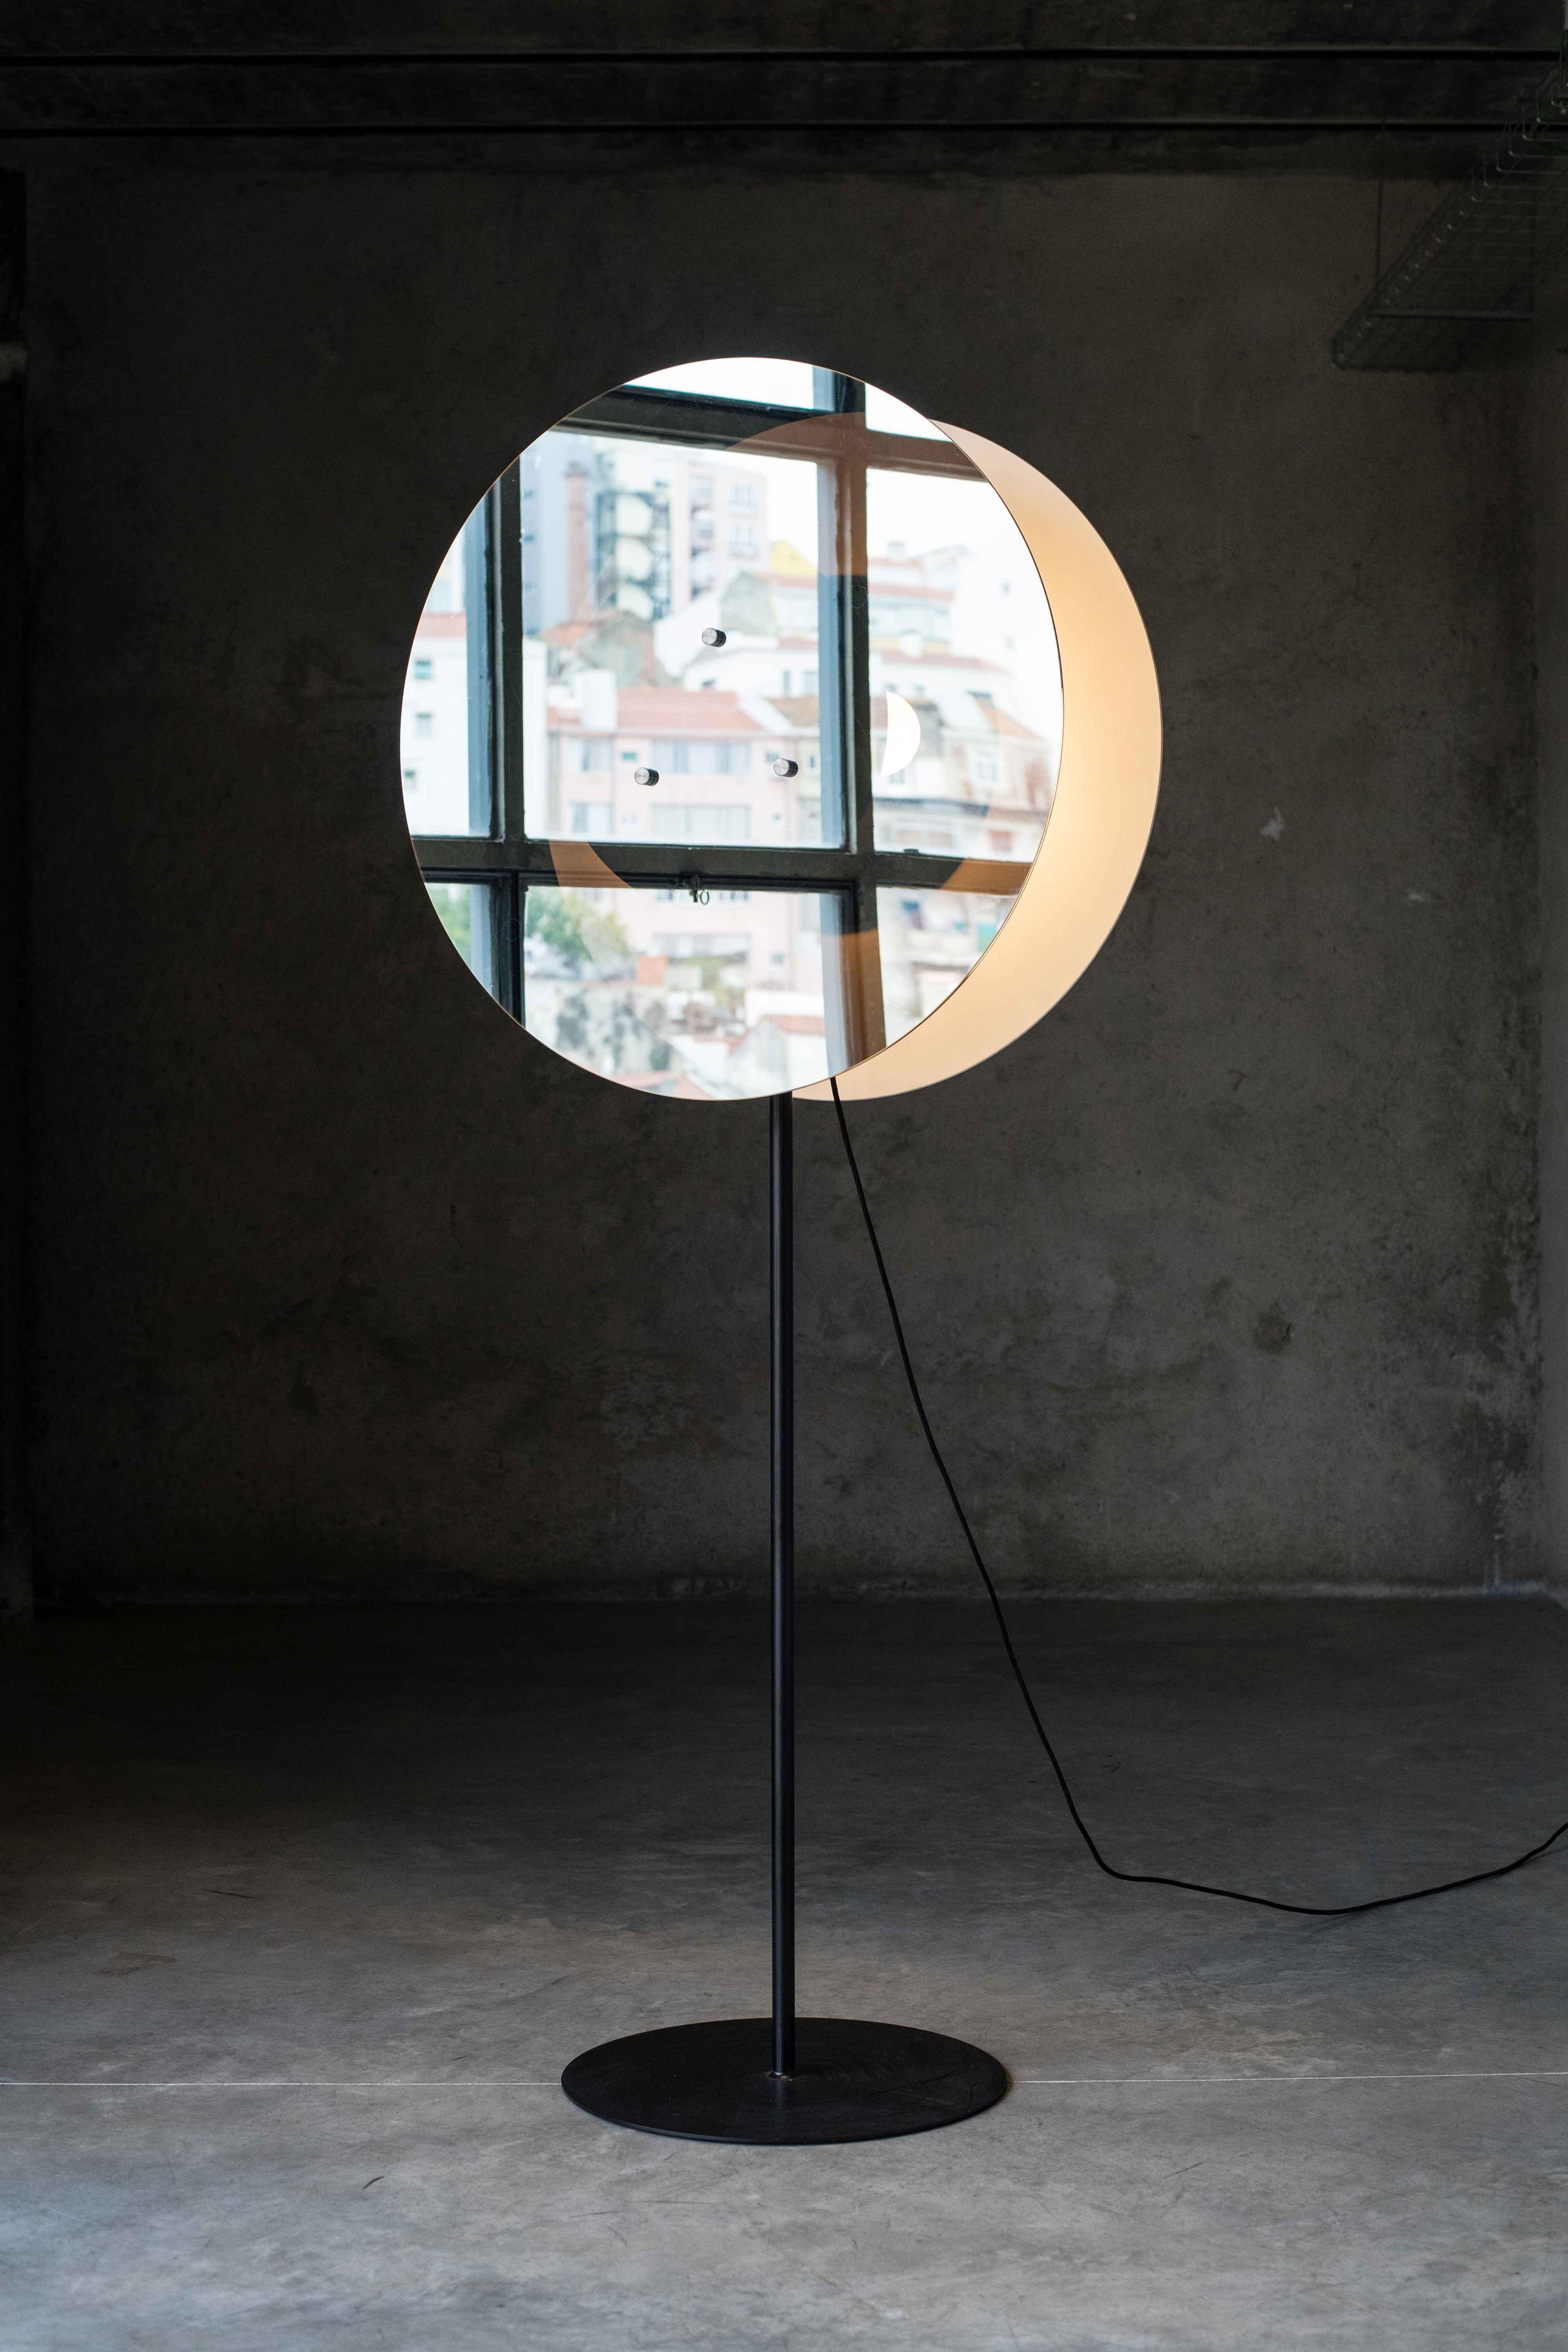 Entre deux lampes par MOB 
Édition limitée de 15 + 1 prototype
Designer : Javier Toro Blum (Chili)
Dimensions : H 175 x P 40 
MATERIAL : Structure en acier, verre miroir unidirectionnel, ampoules, câble noir.

Un faisceau de lumière est contenu dans